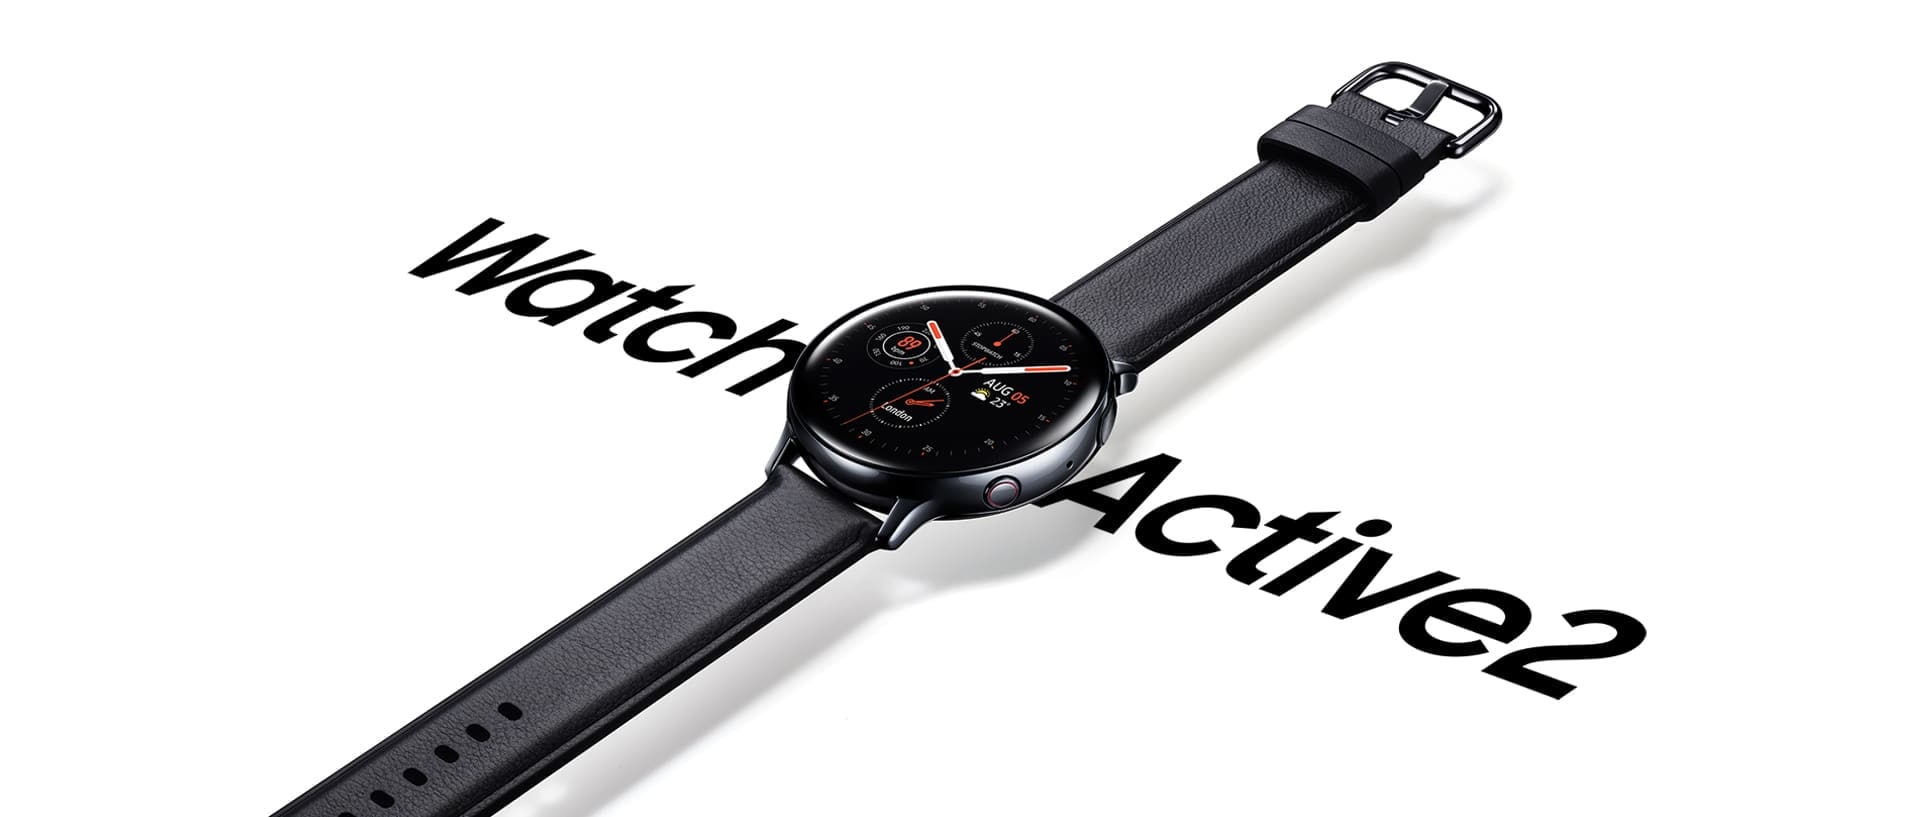 Часы Galaxy Watch Active2 черного цвета из нержавеющей стали с черным кожаным ремешком, который висит над надписью «Watch Active 2» крупным шрифтом ниже.